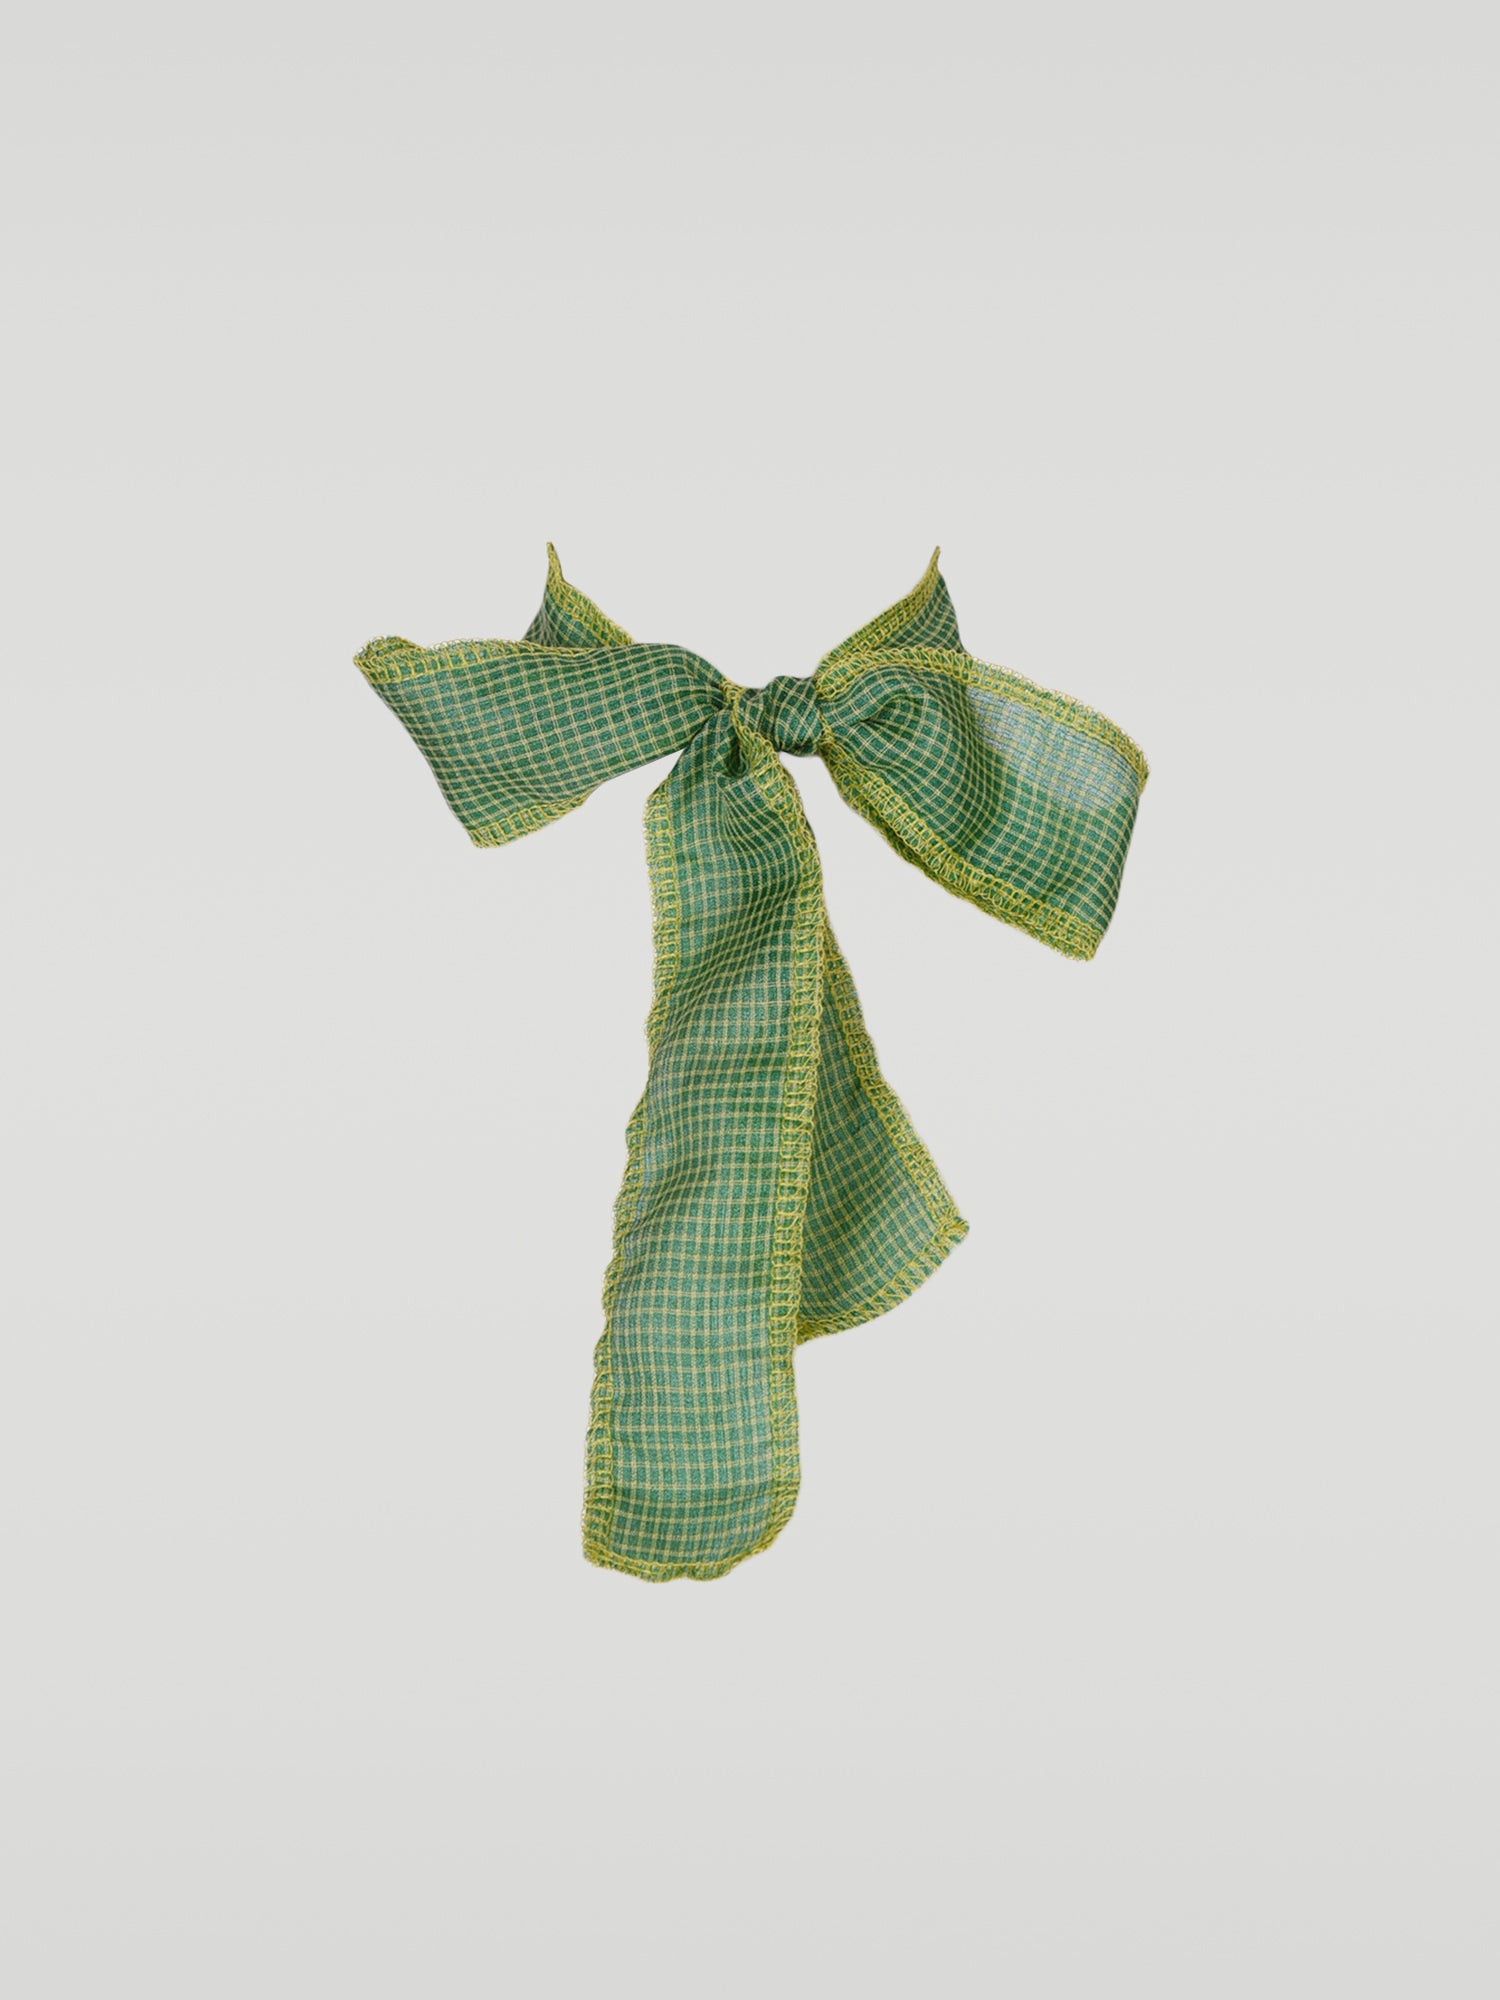 Serged Ribbon Lace - Green Plaid